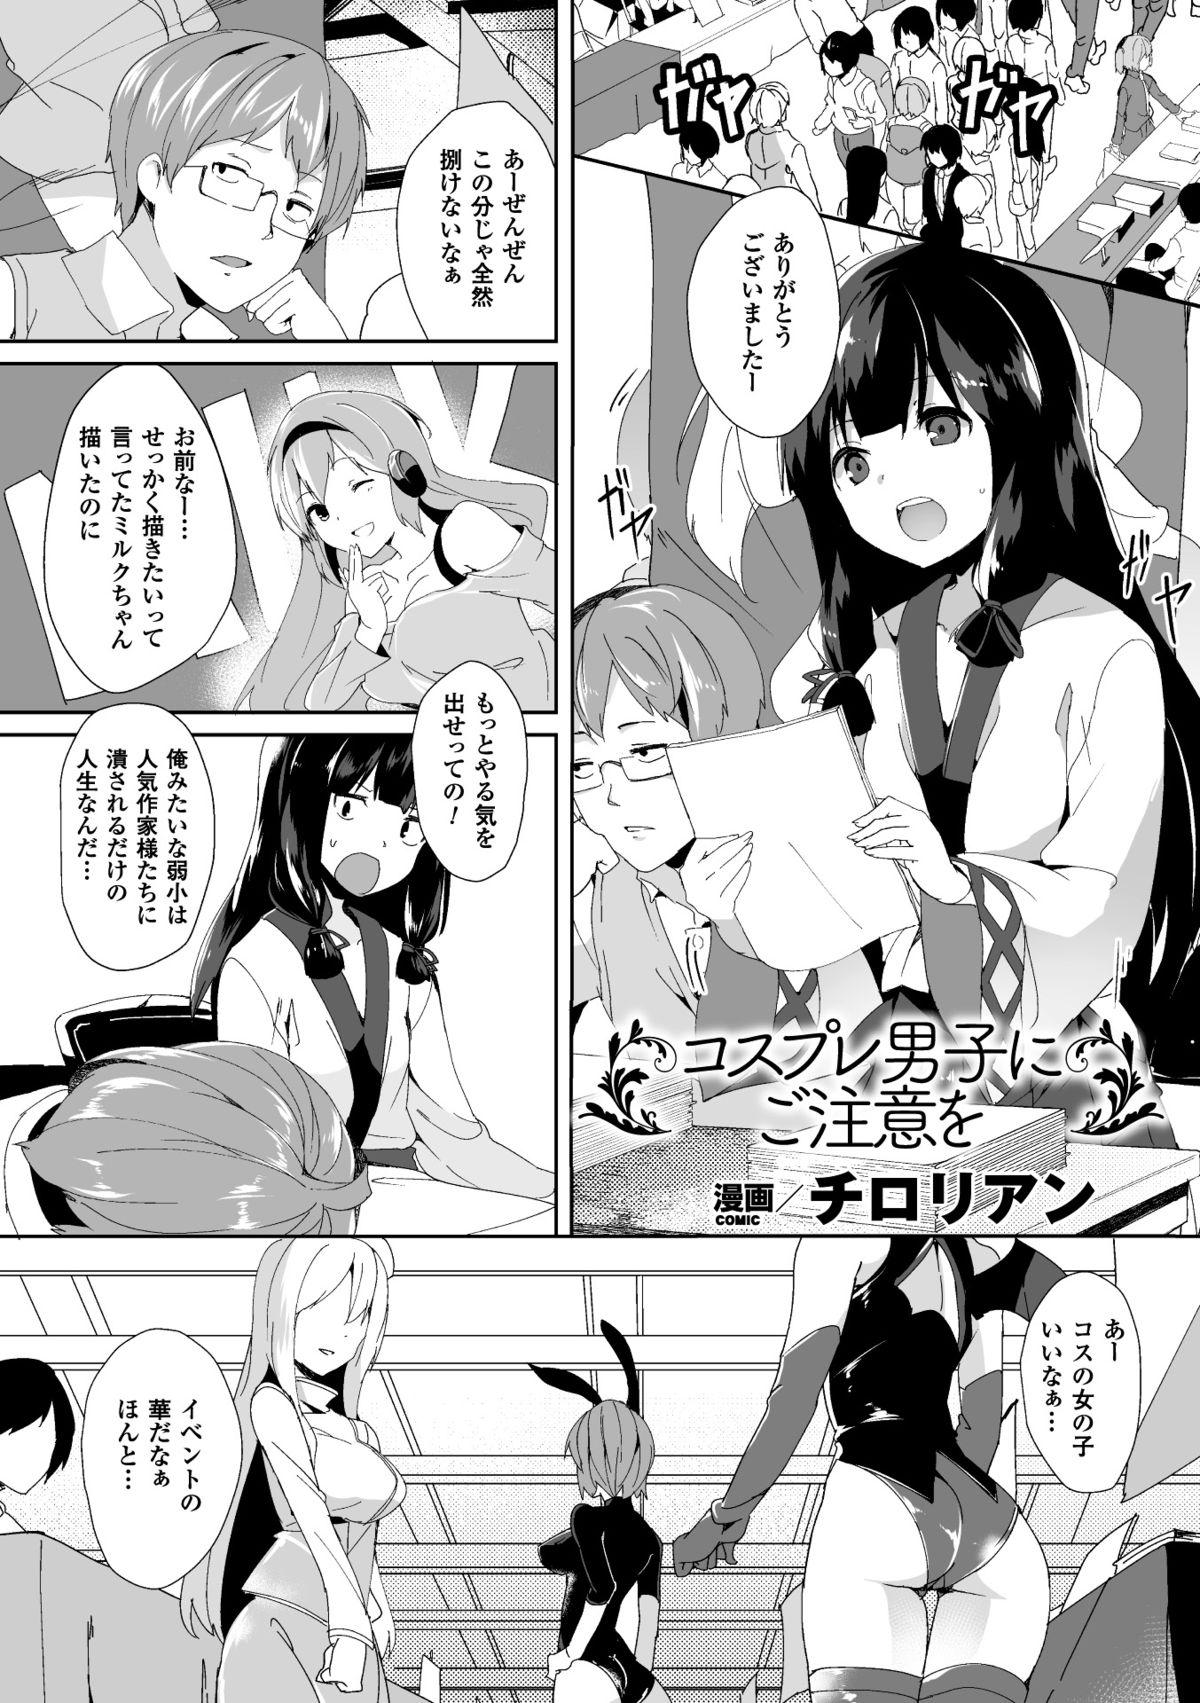 Bessatsu Comic Unreal Nyotaika H wa Tomerarenai Digital Ban Vol. 2 20